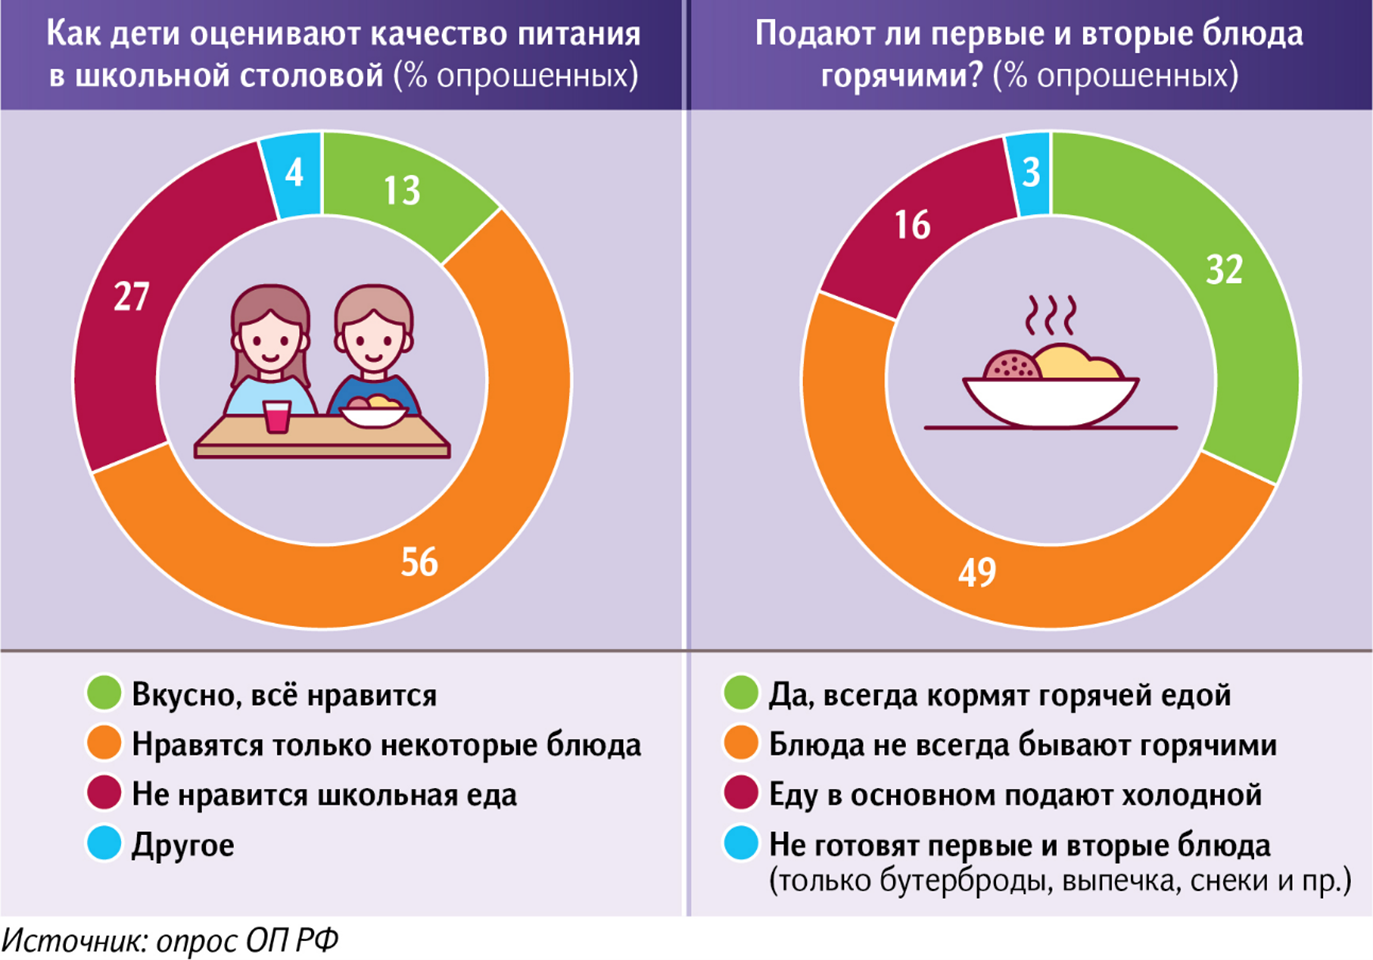 Температурная подача и вкусовые качества: ОП РФ назвала основные претензии школьников к еде